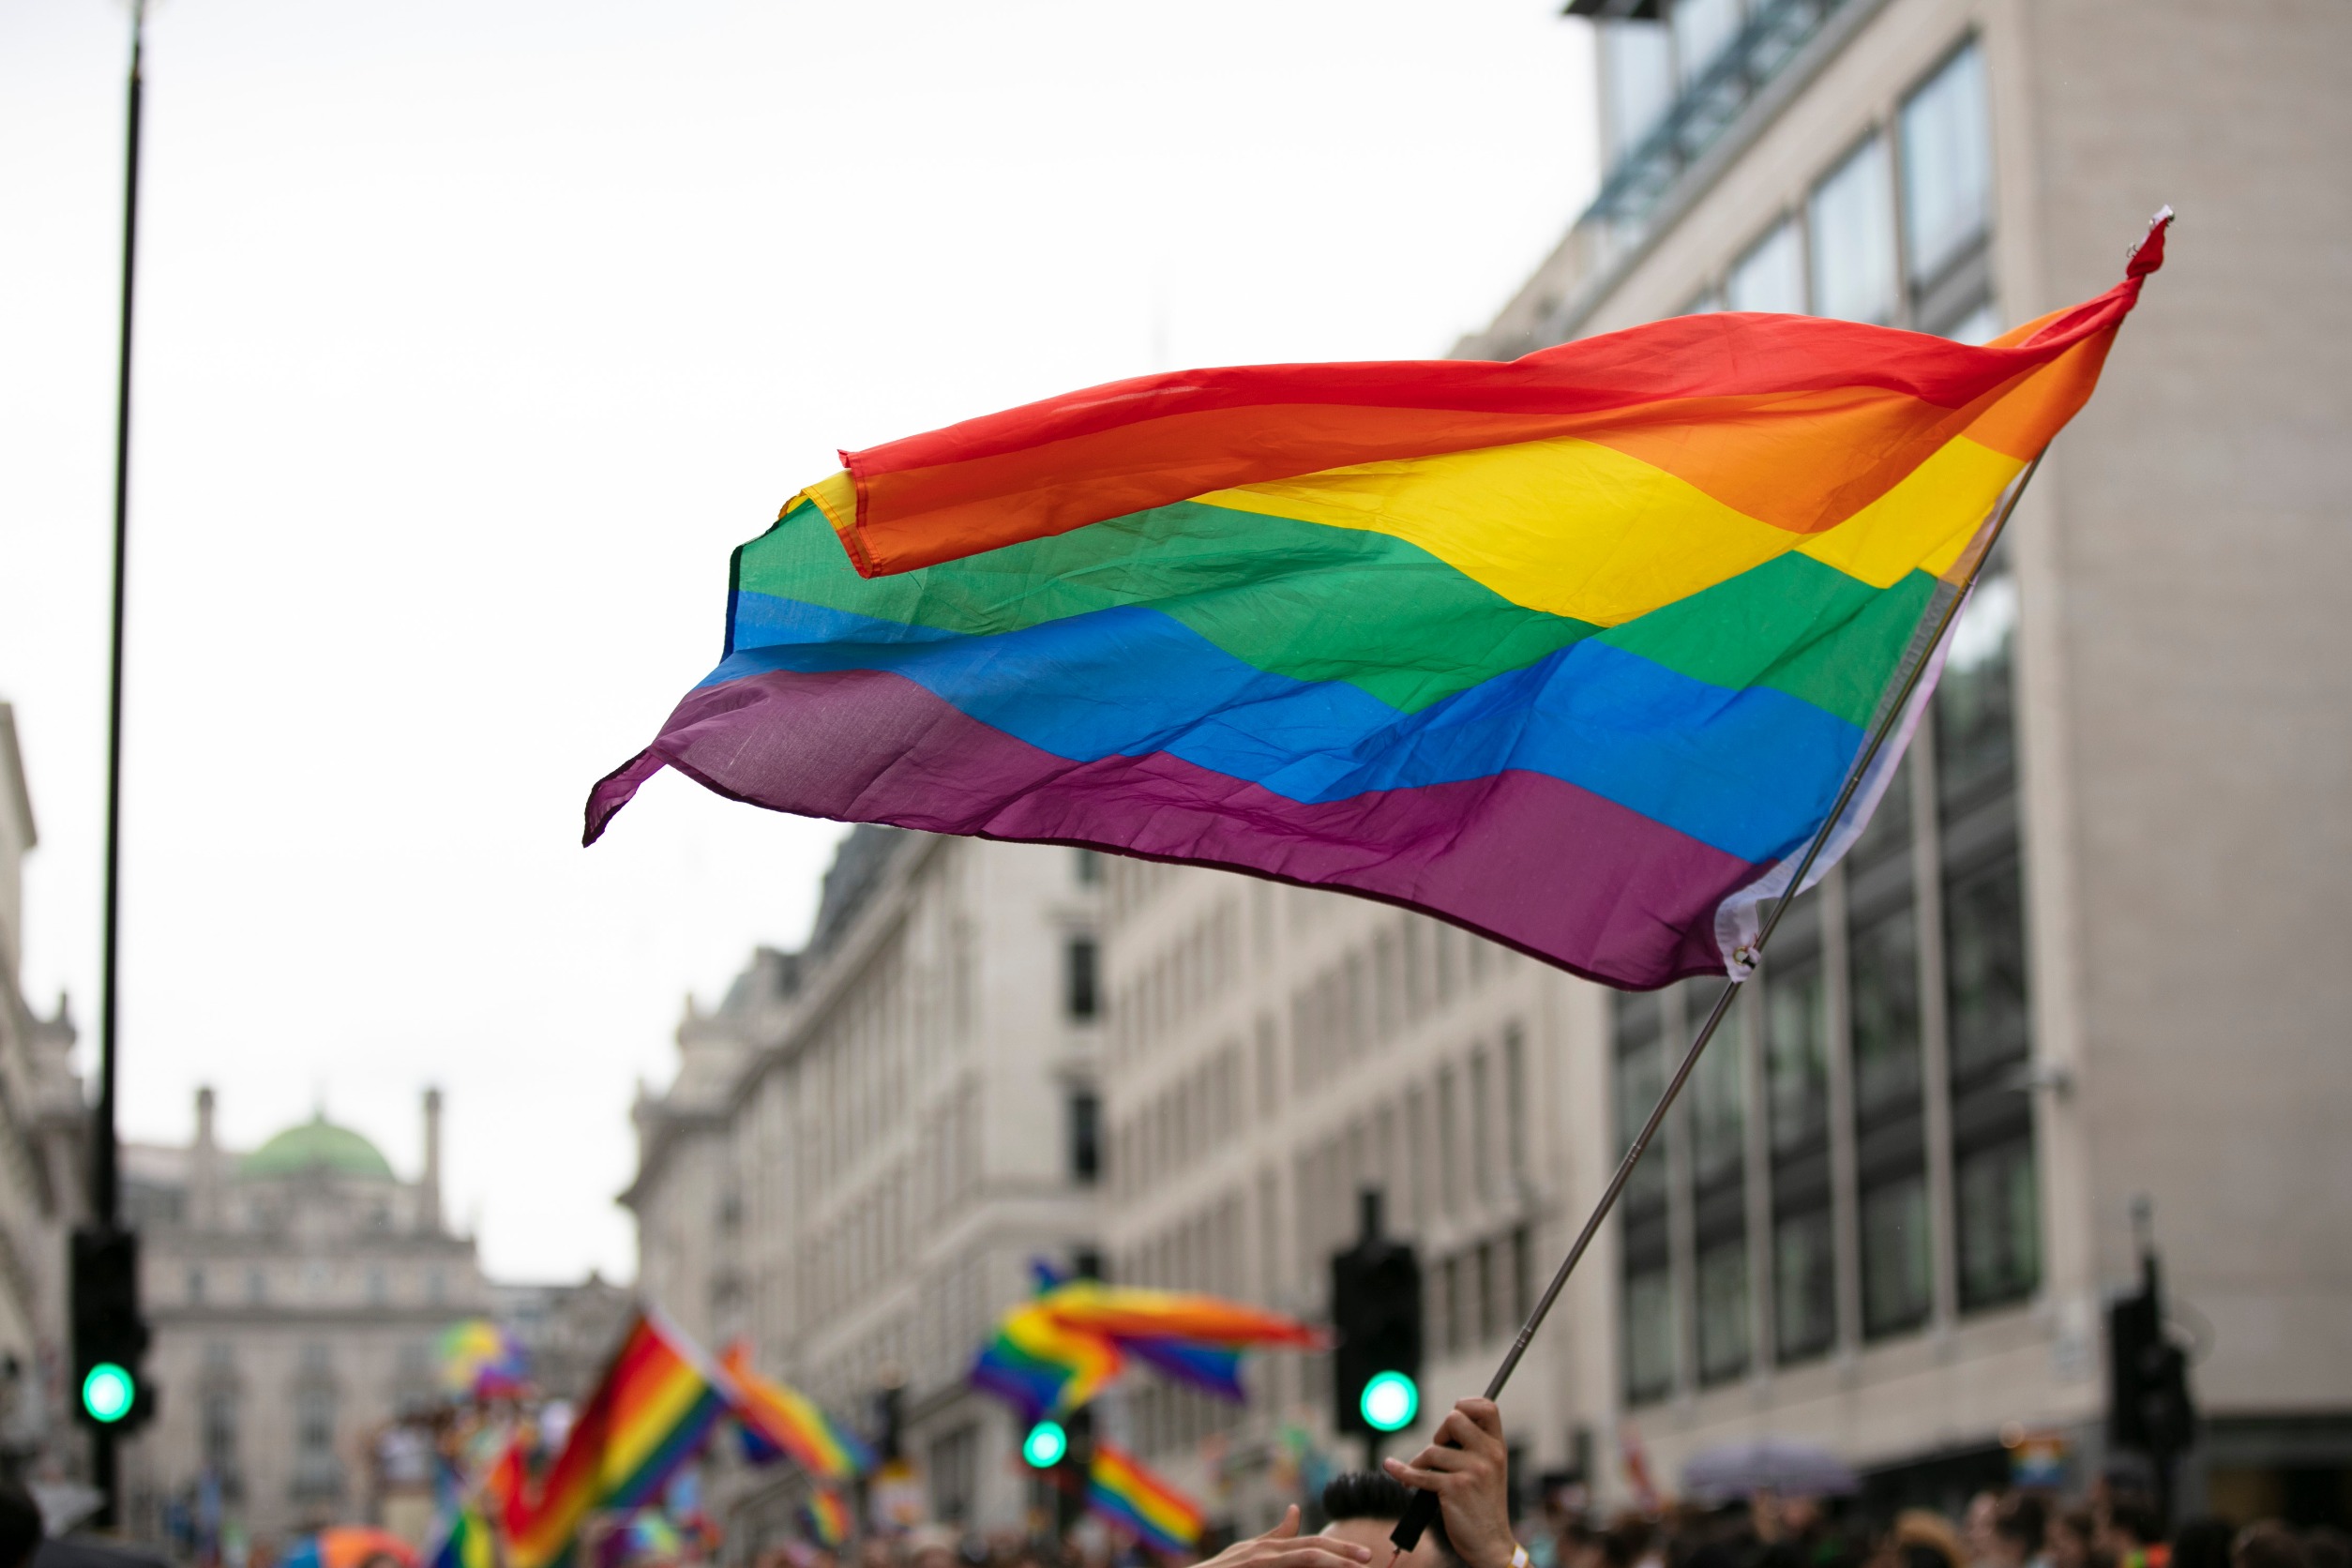 The rainbow flag, an evolving 